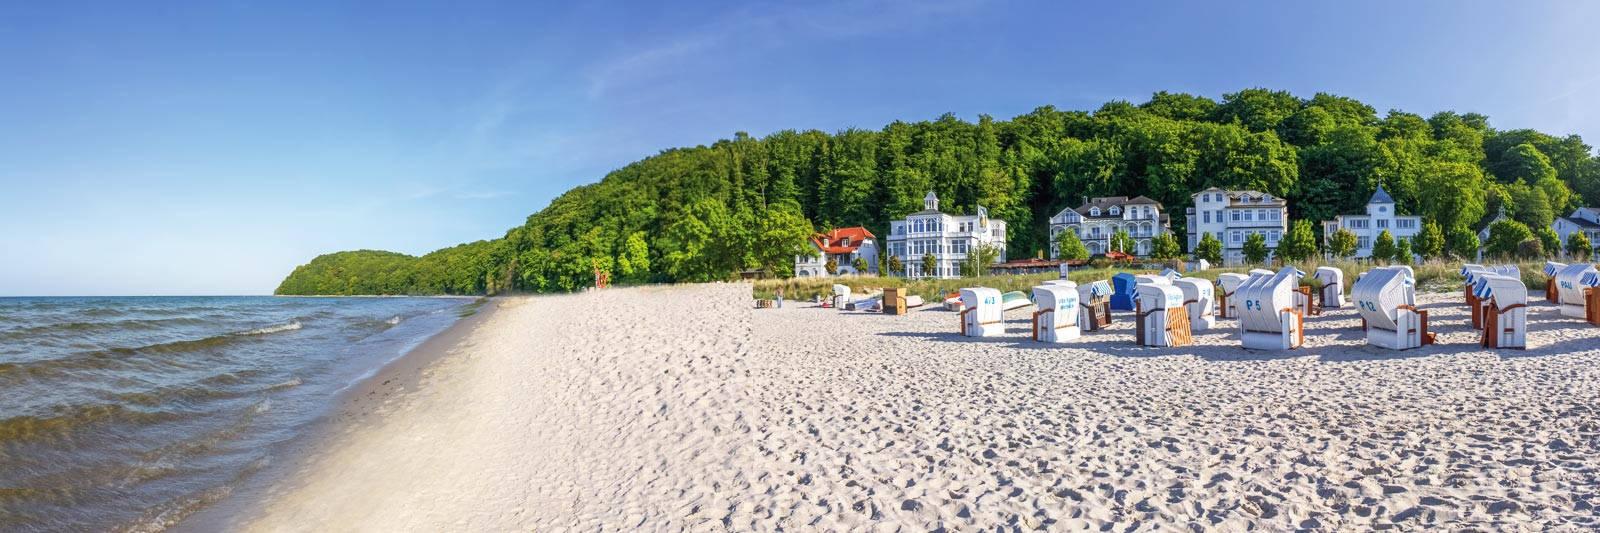 15 Ferienwohnungen und Ferienhäuser in Quadenschönfeld - tourist-online.de